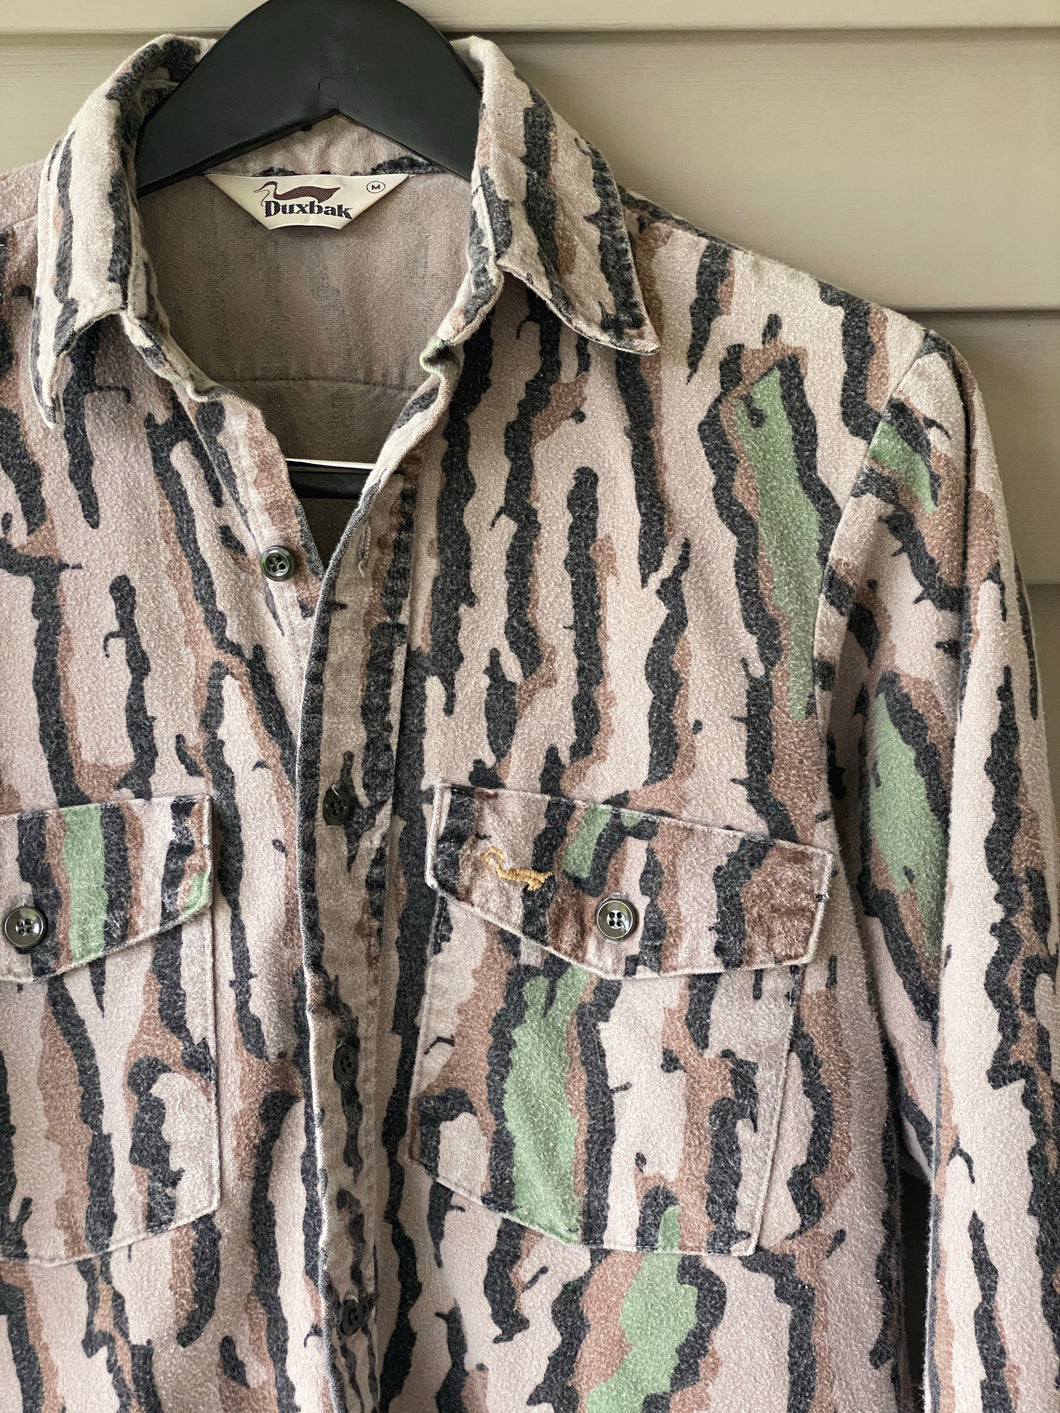 Duxbak Chamois Shirt (M/L)